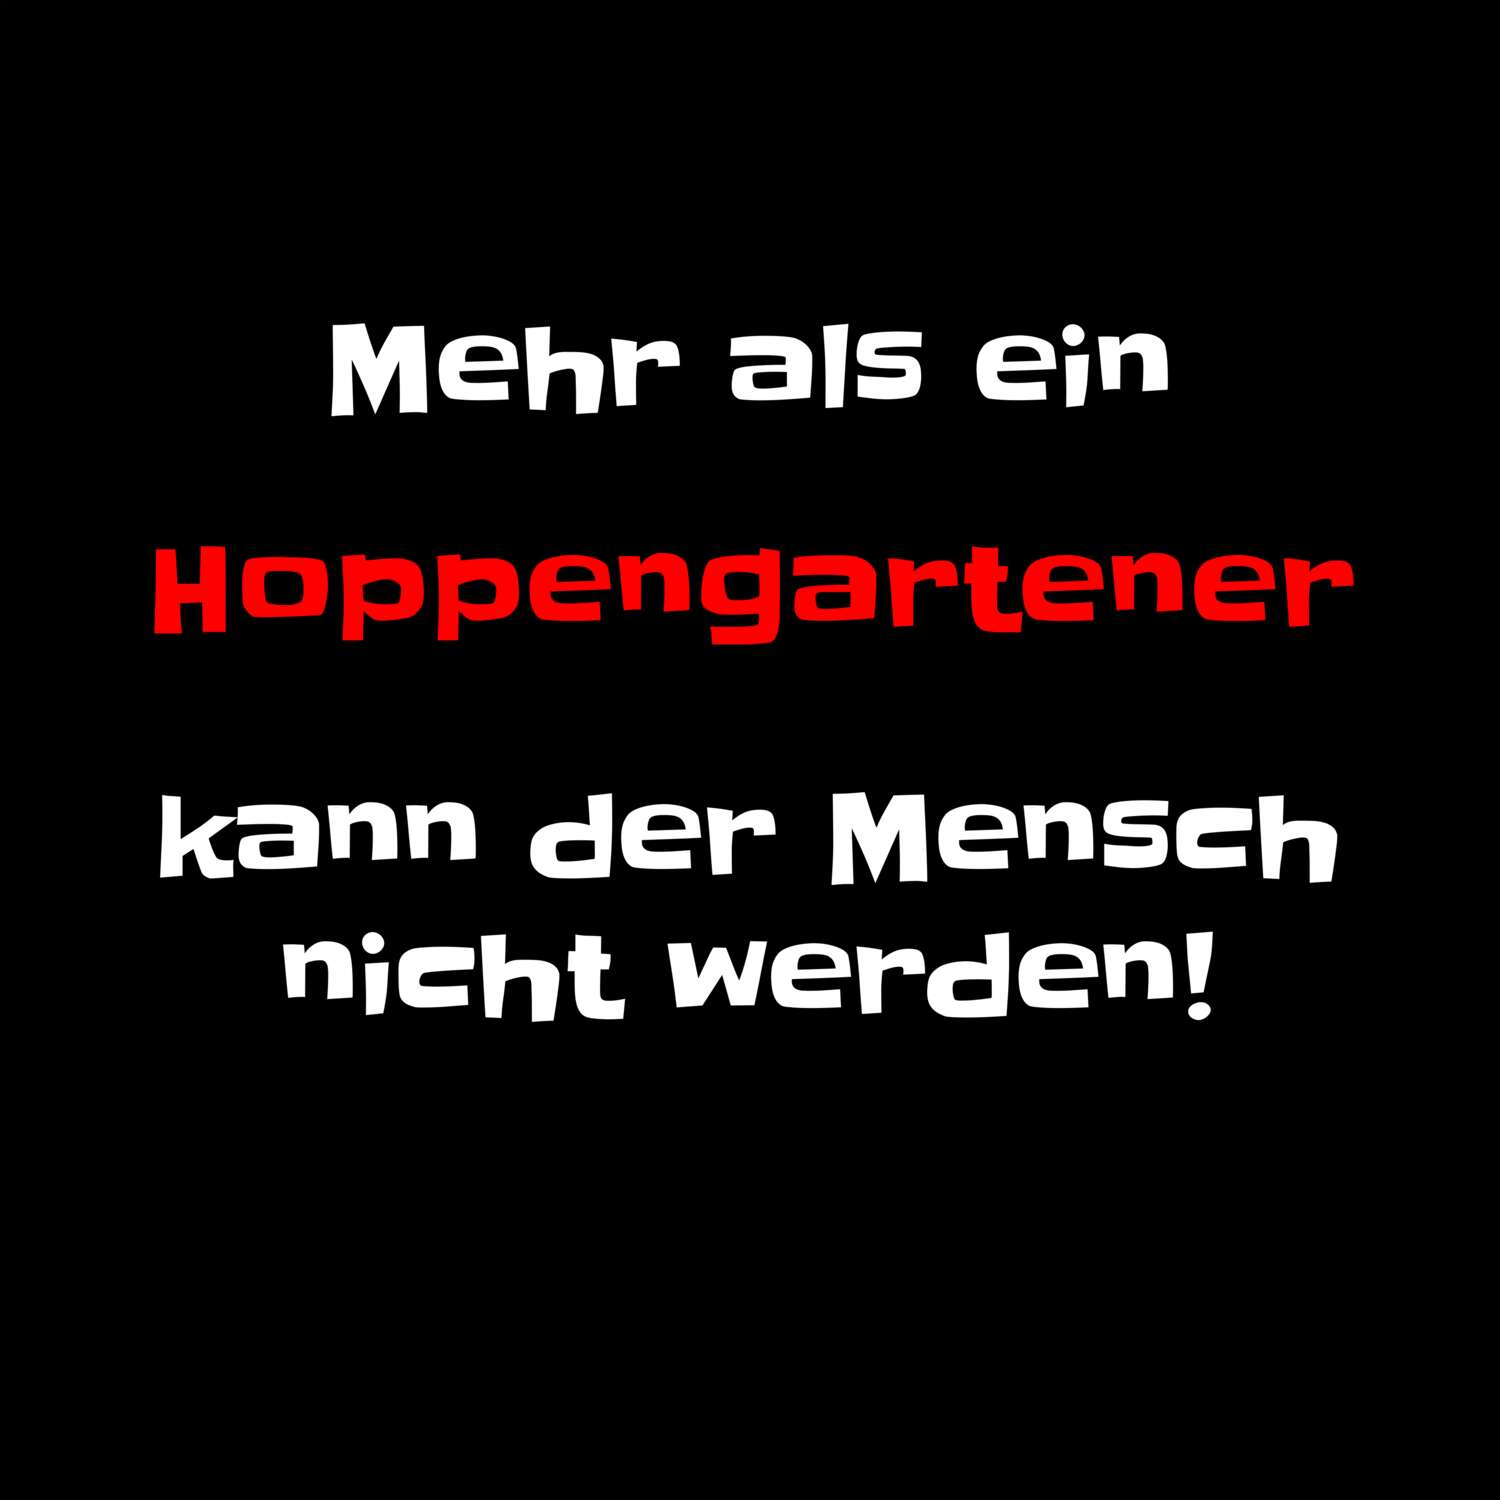 Hoppengarten T-Shirt »Mehr als ein«